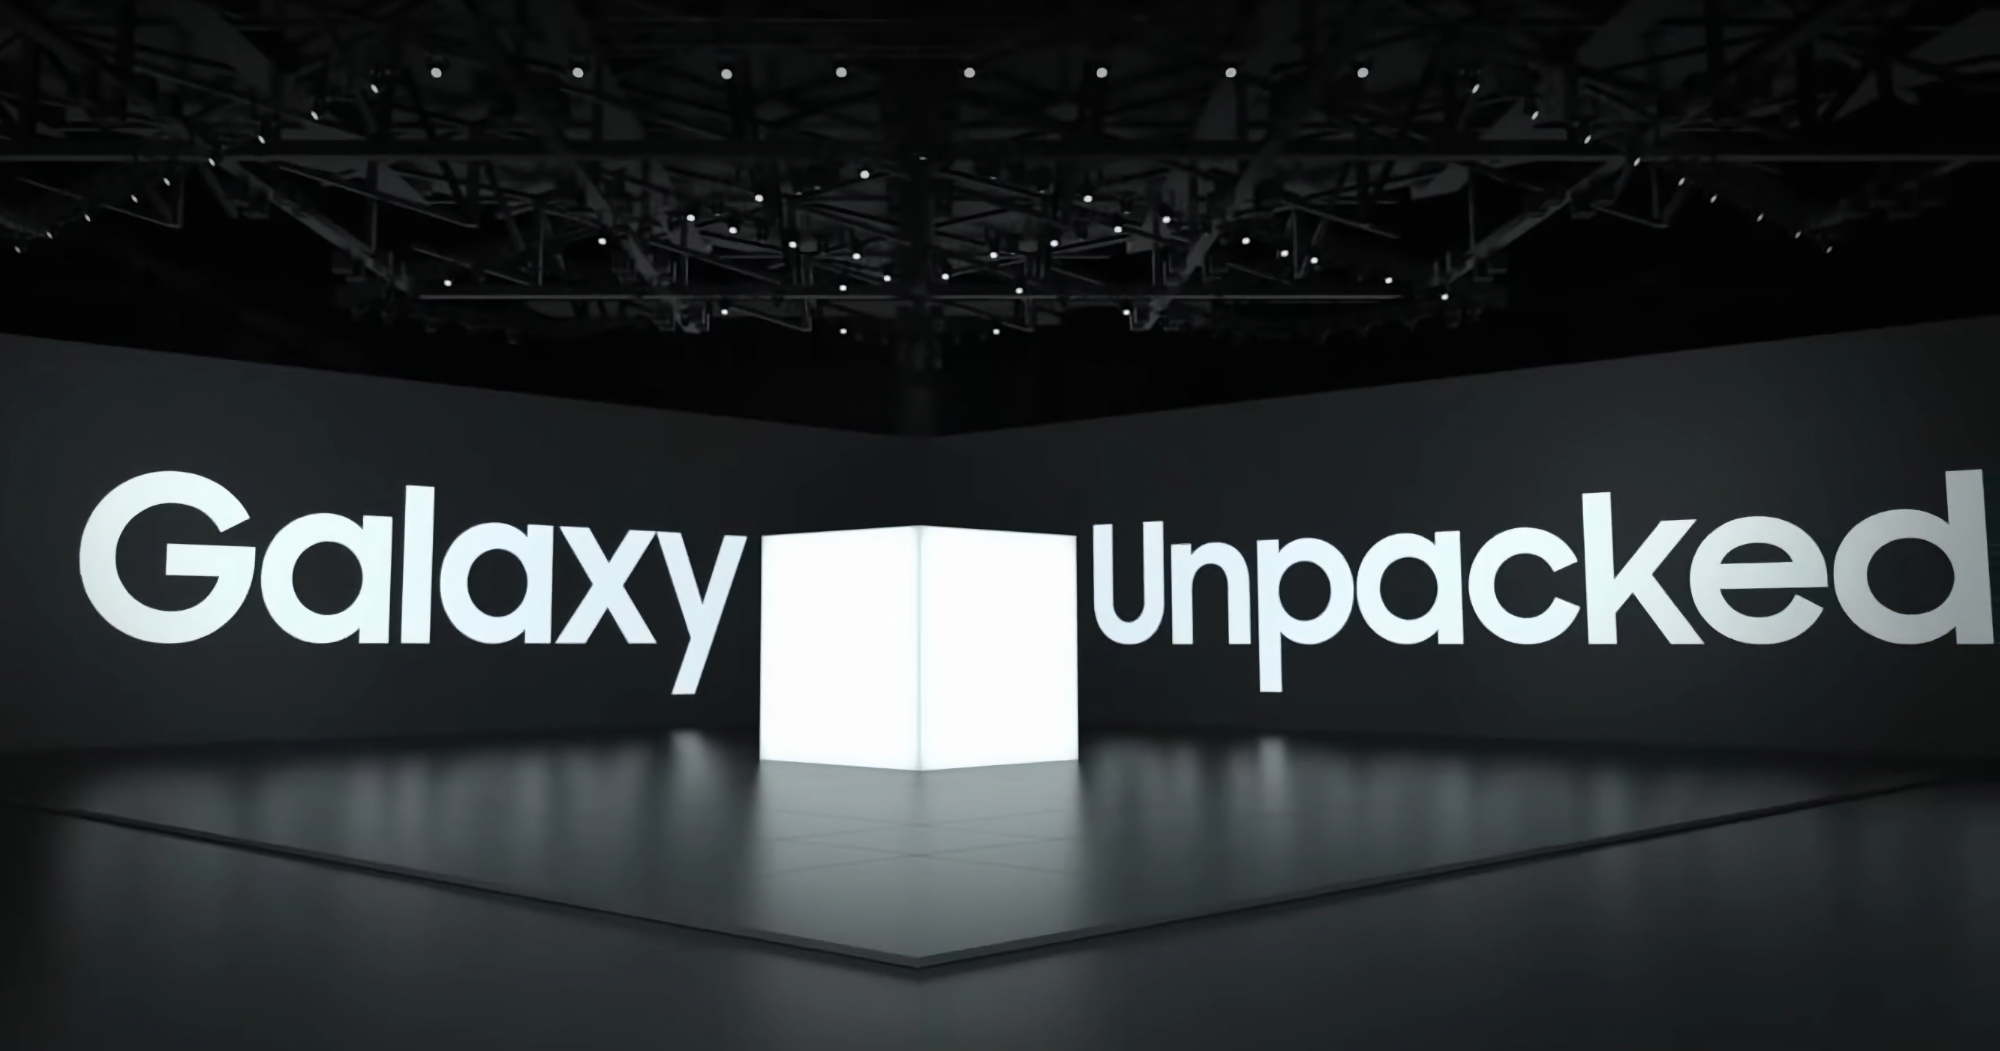 Yonhap : Samsung organisera la prochaine présentation Galaxy Unpacked en juillet, à Paris.